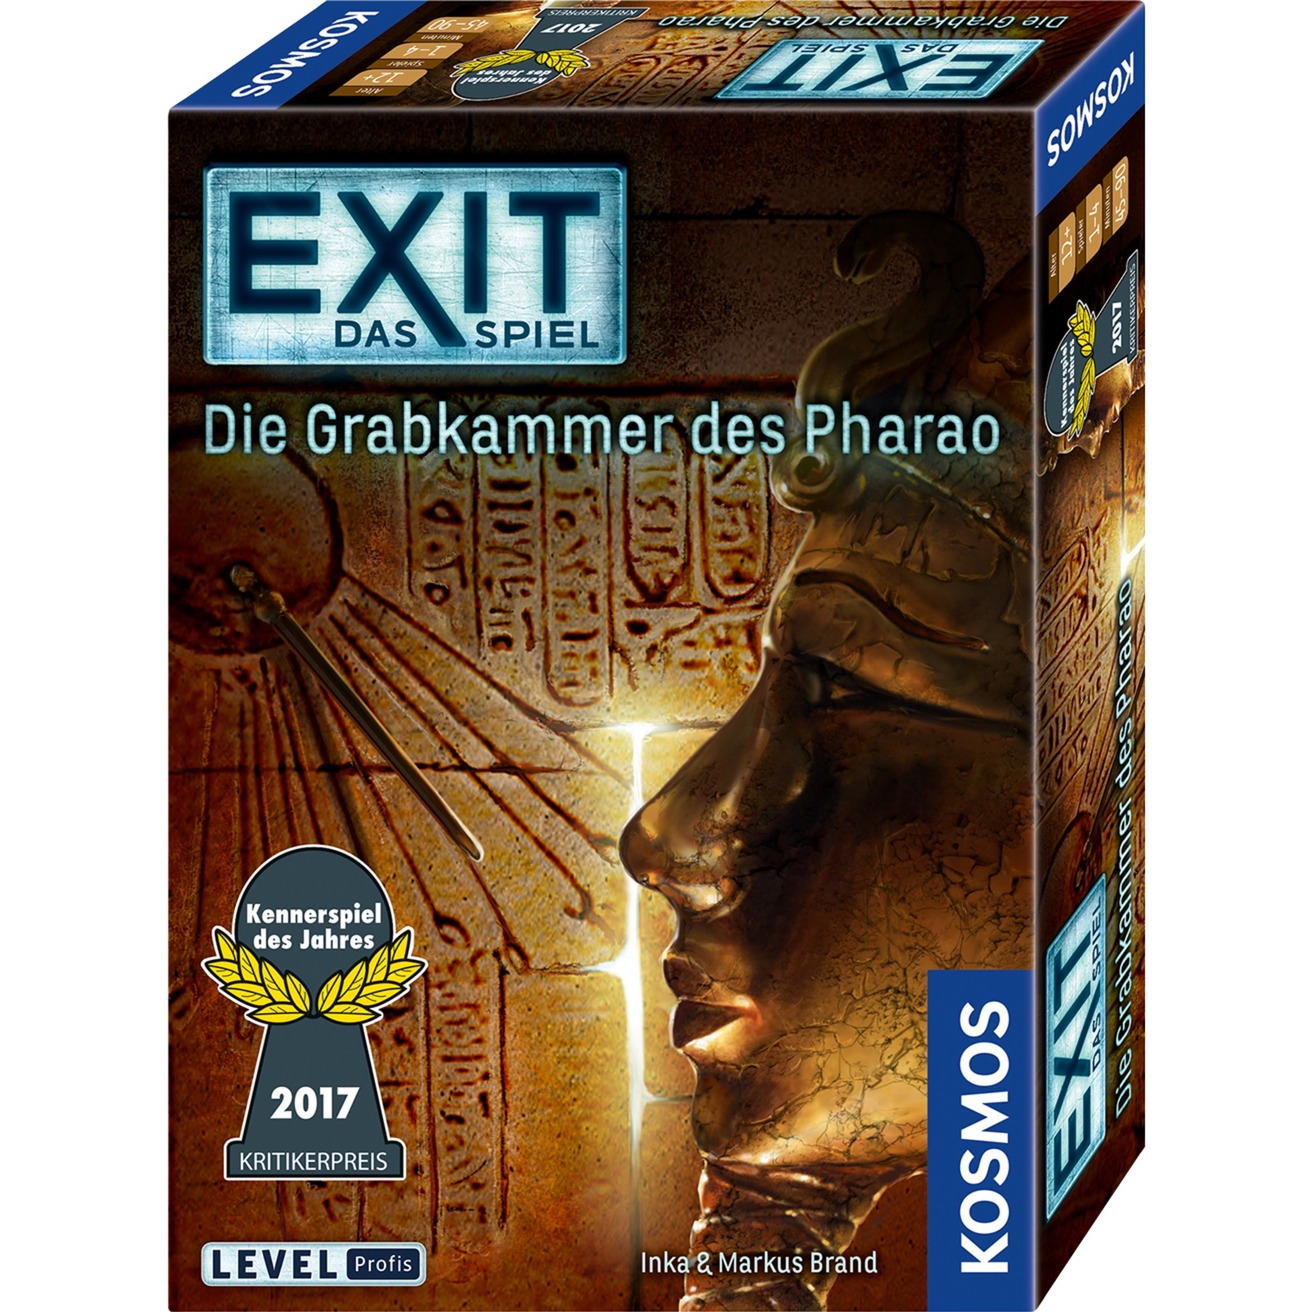 Image of Alternate - EXIT - Das Spiel - Die Grabkammer des Pharao, Partyspiel online einkaufen bei Alternate